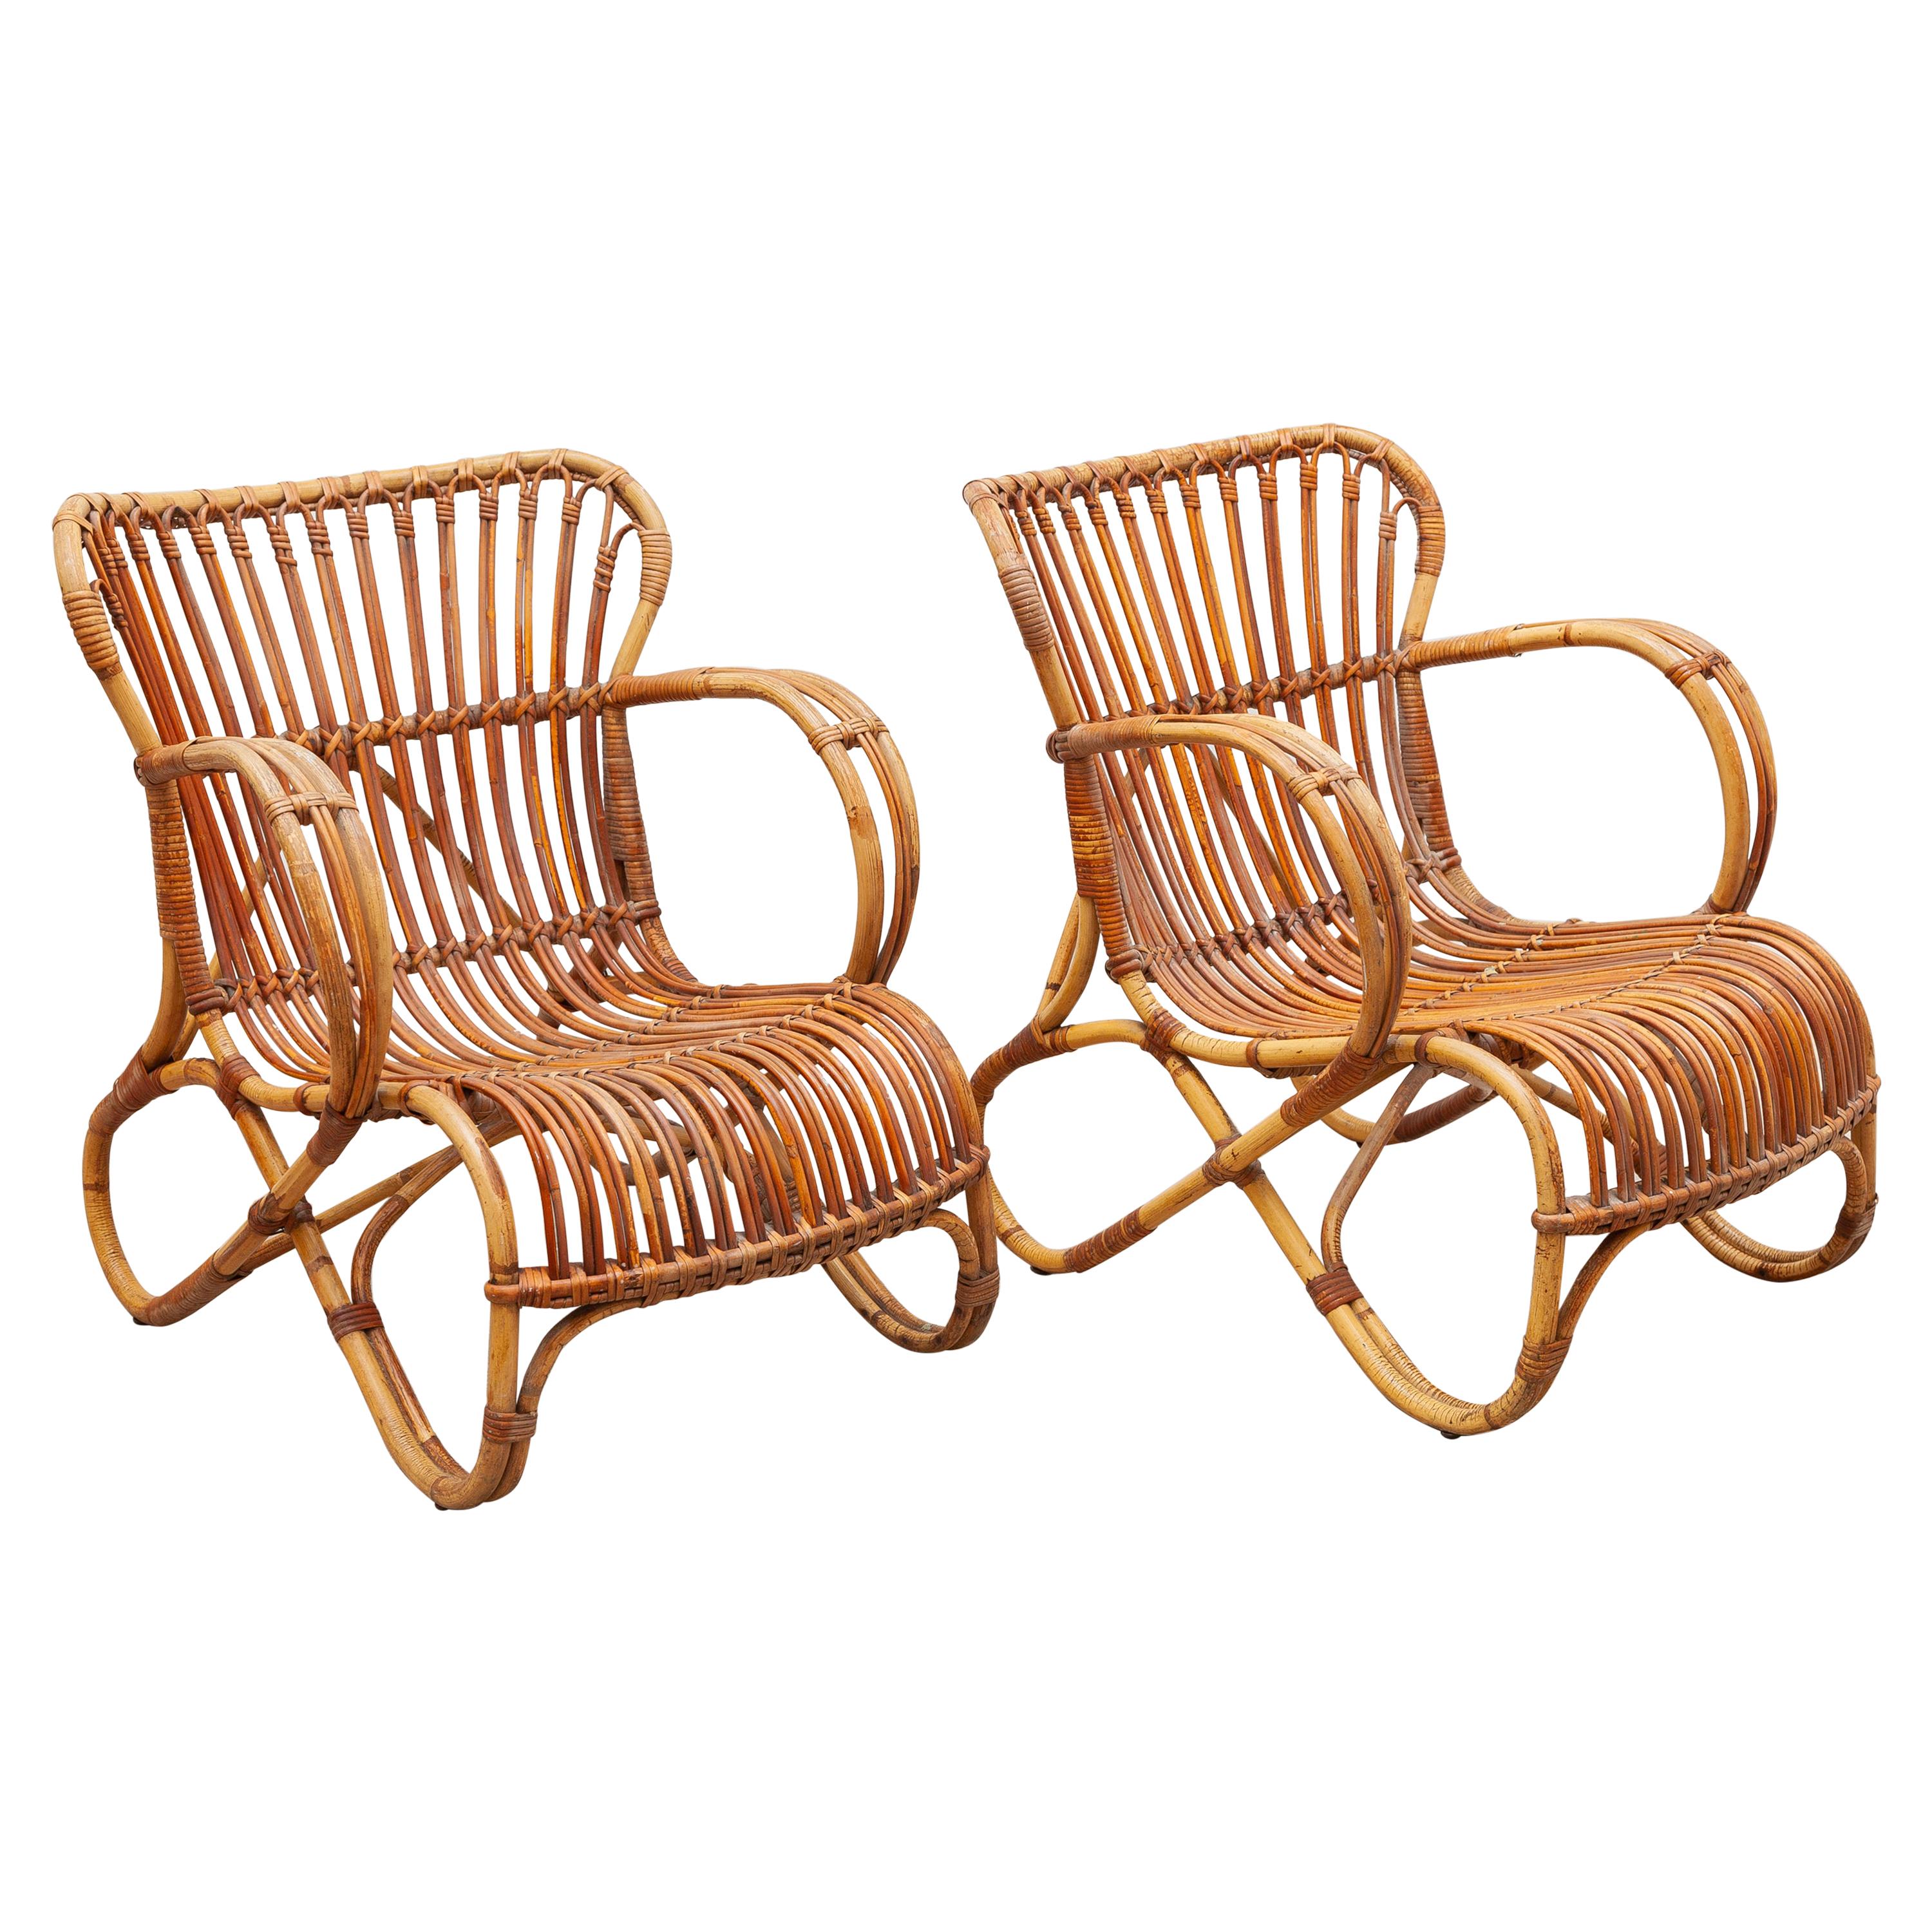 Bamboo Wicker Lounge Chairs Designed by Dirk van Sliedrecht, 1950s